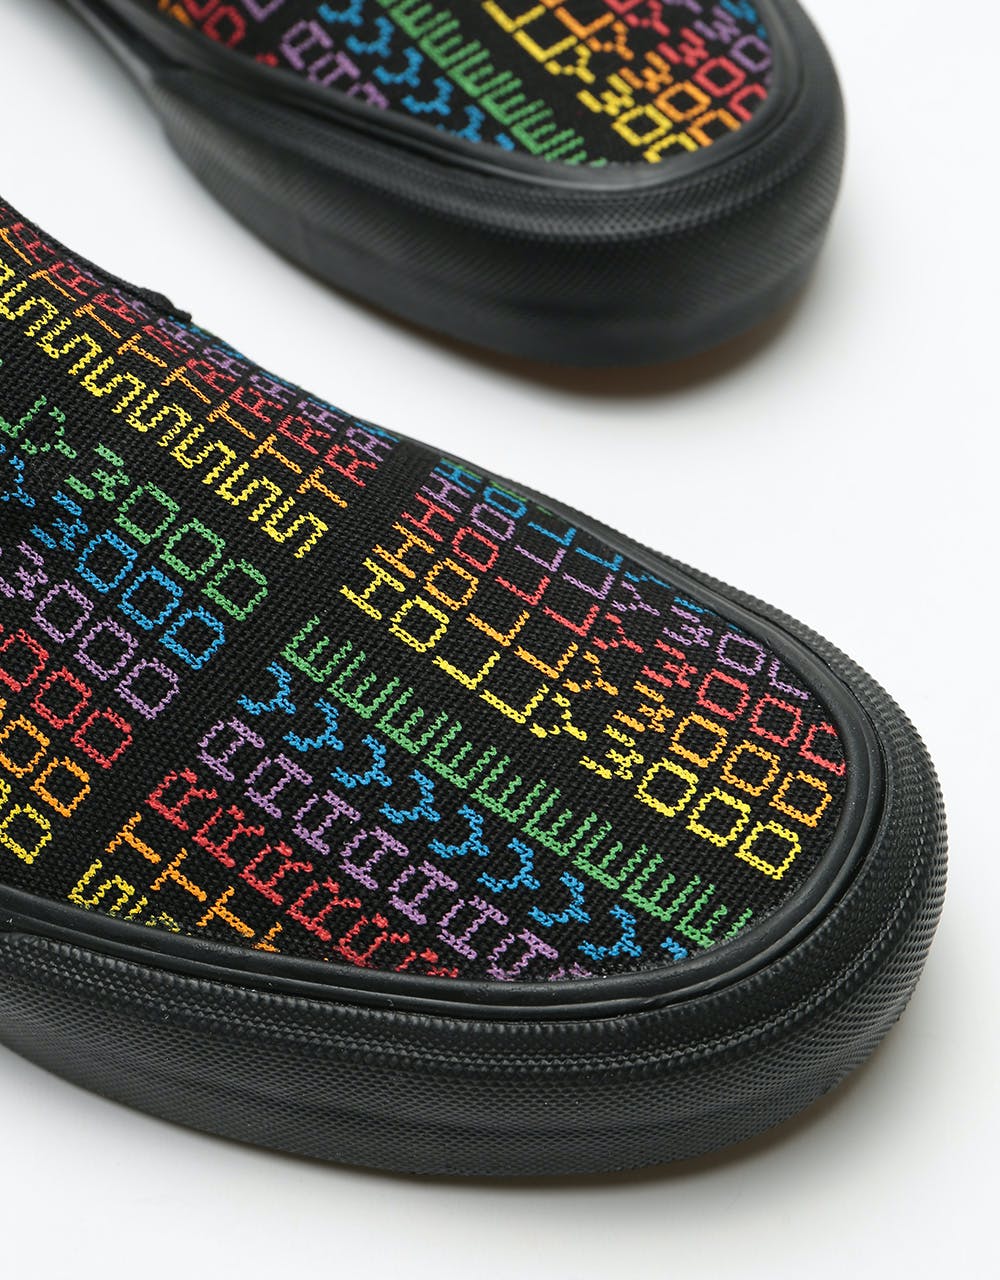 Straye Ventura Slip-On Skate Shoes - Knit Rainbow